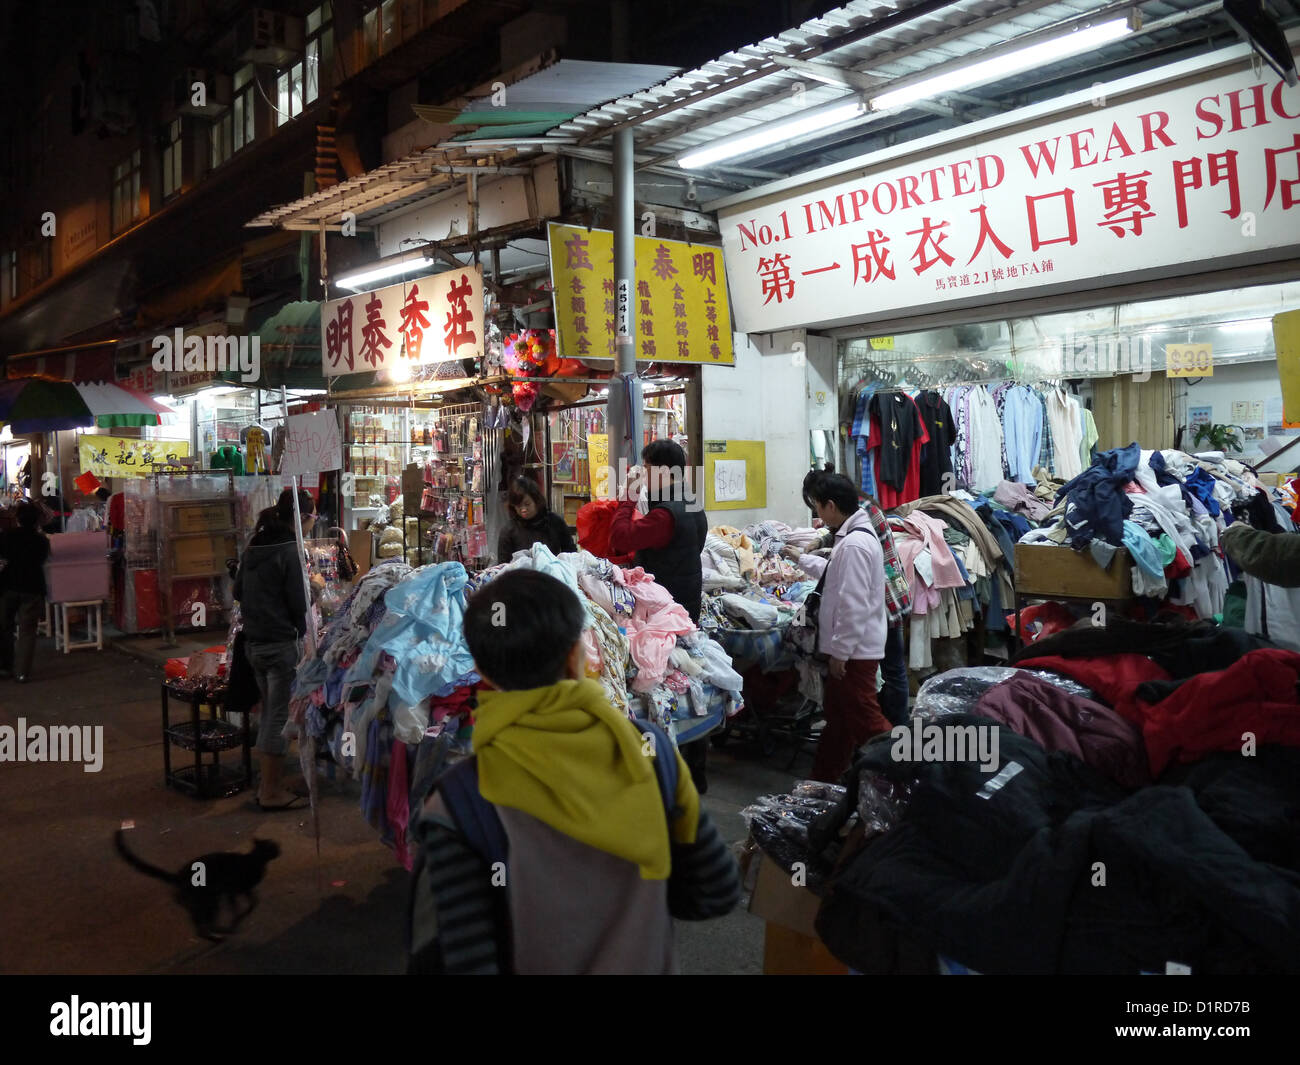 Hong Kong clothing import shop Stock Photo